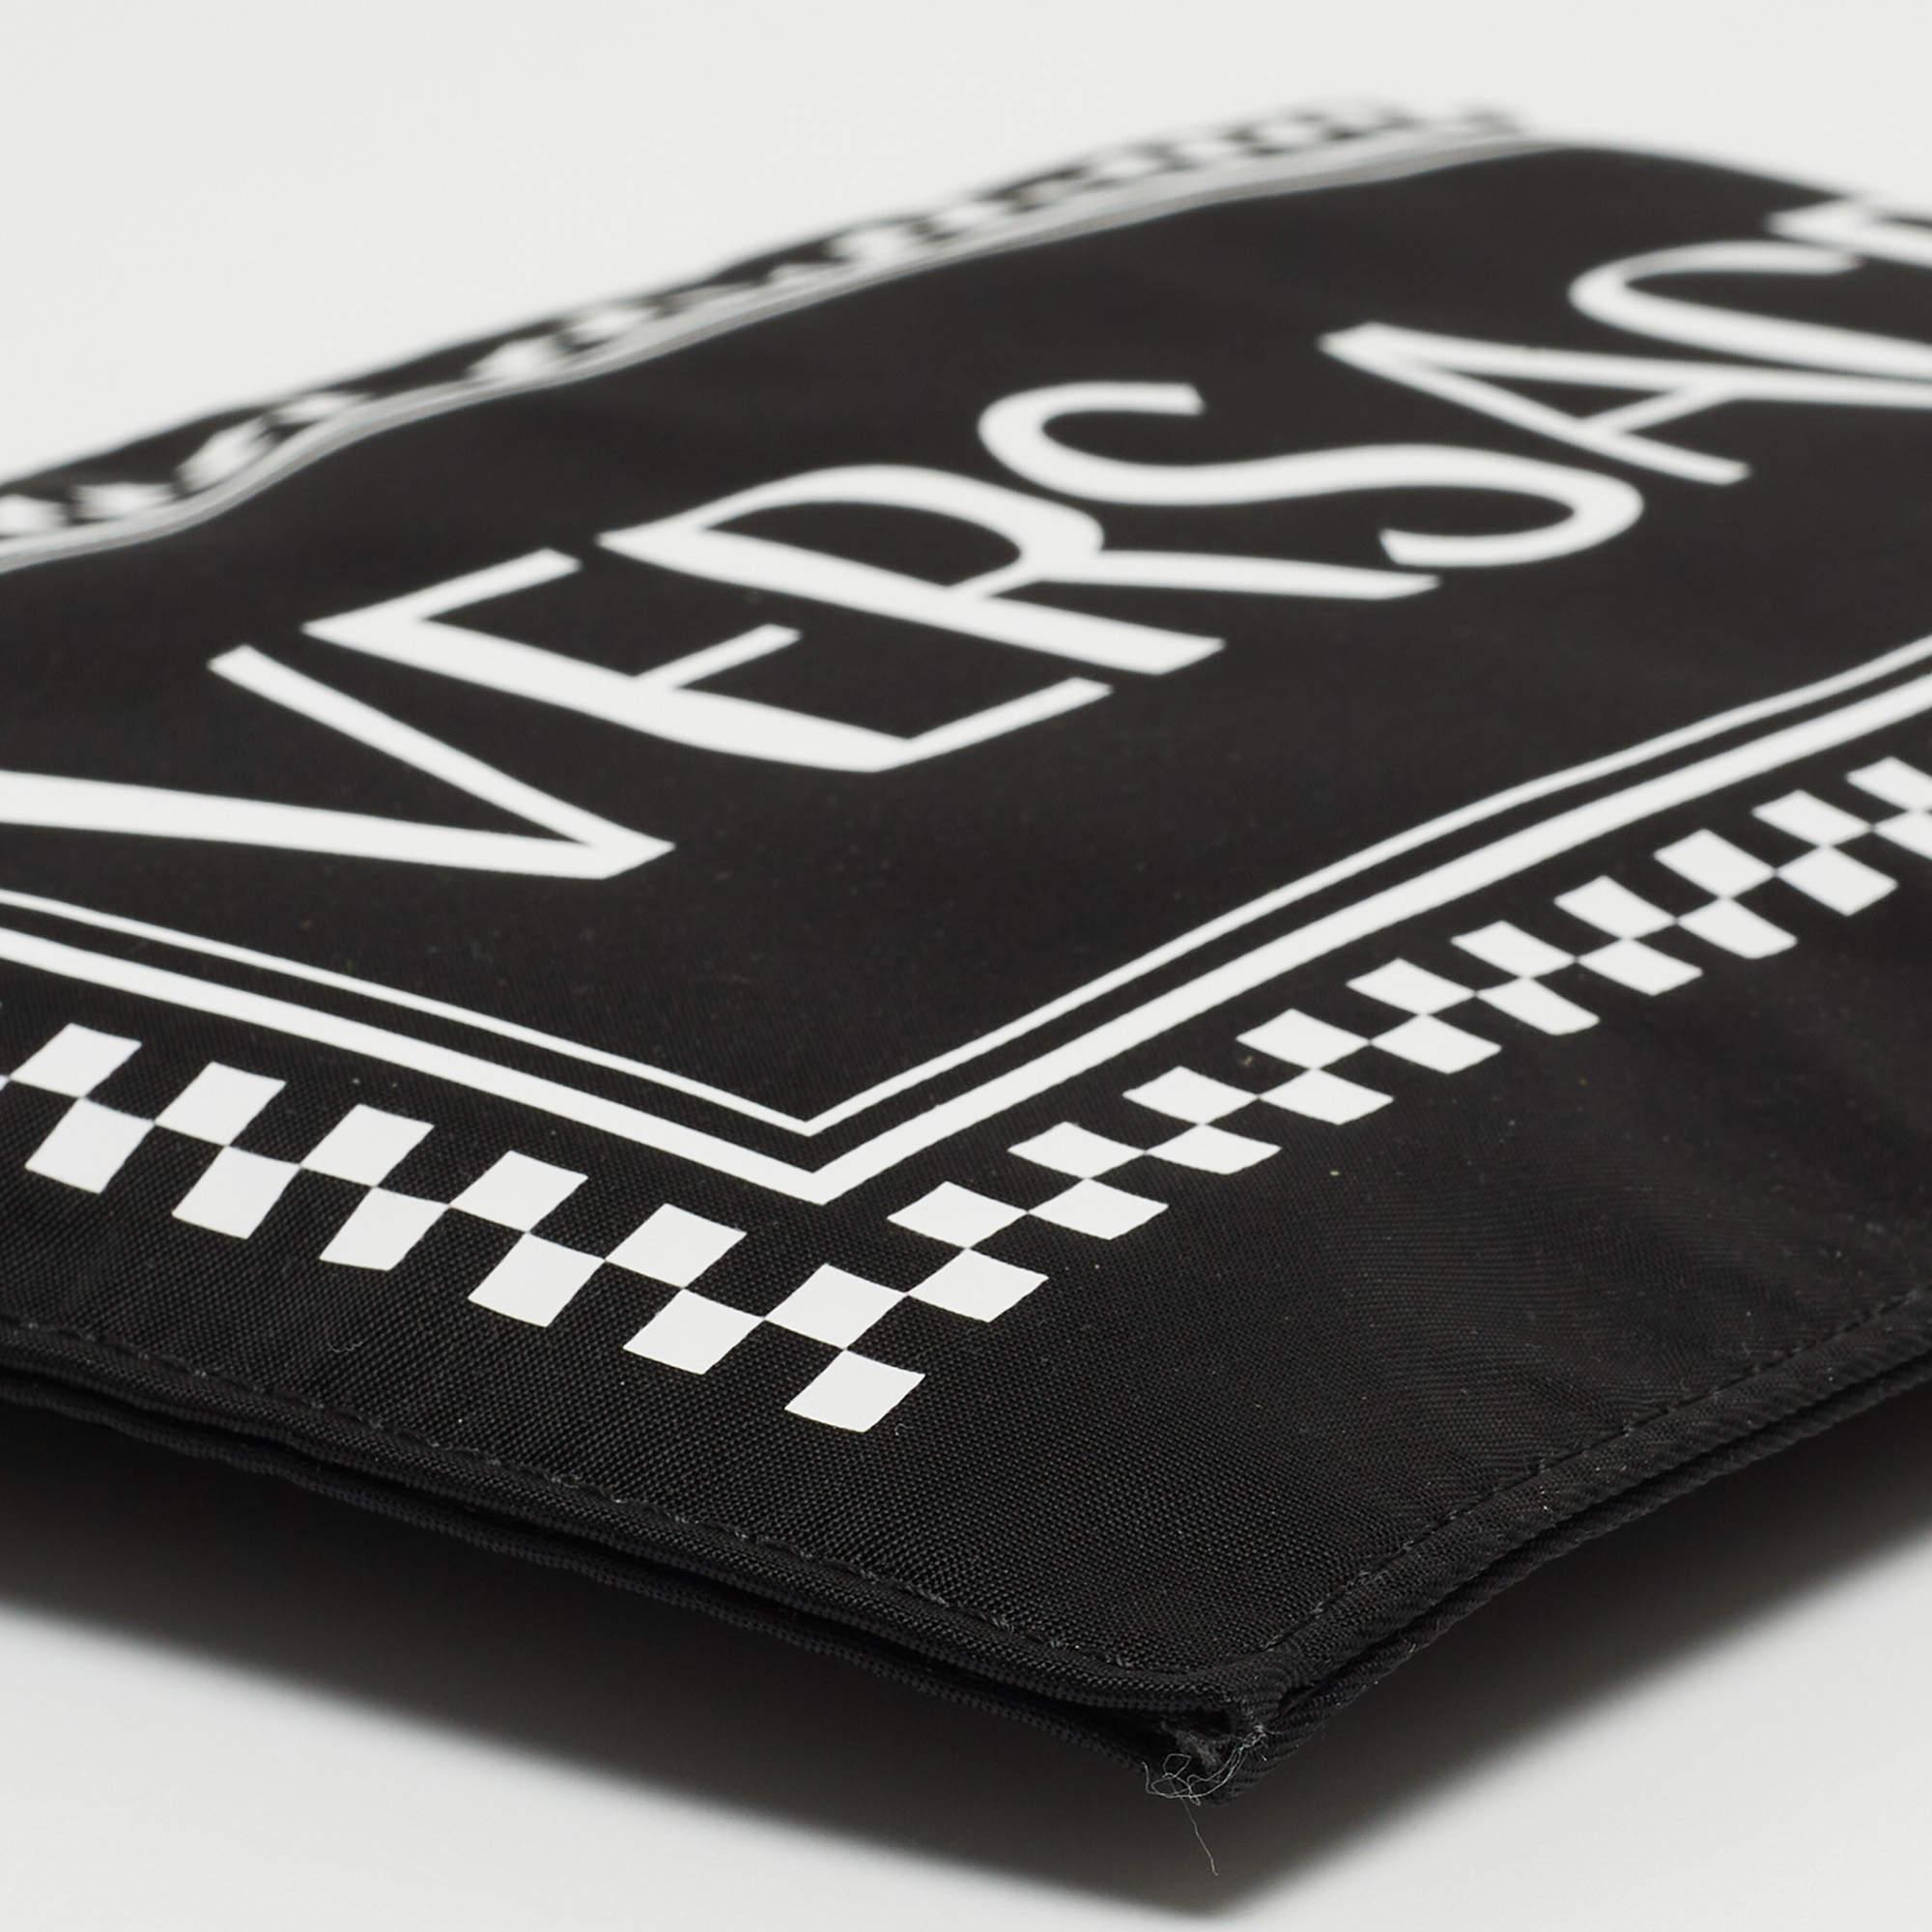 Versace Black/White Nylon Logo Slim Wristlet Pouch 2